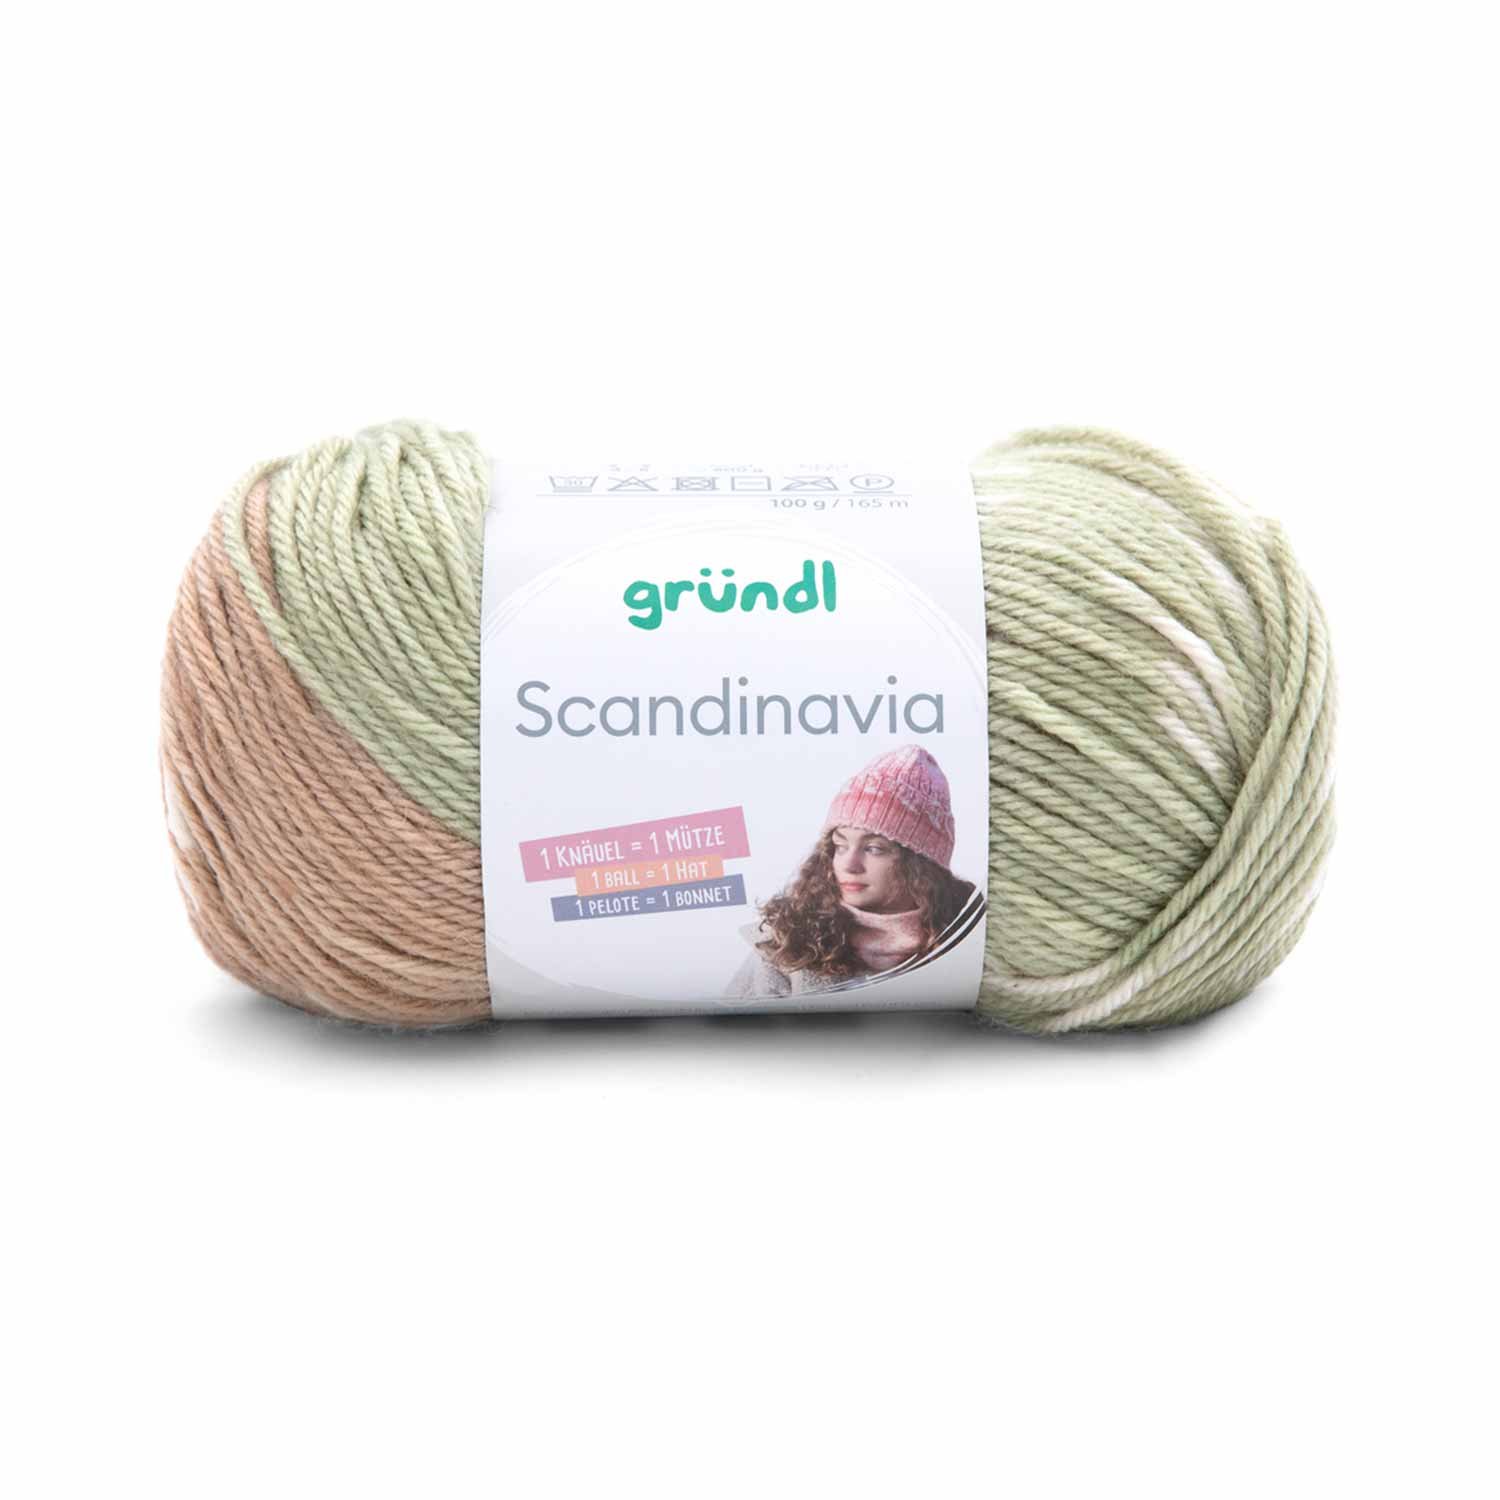 Garn "Scandinavia" 100 g kamel-pastelgrün-natur